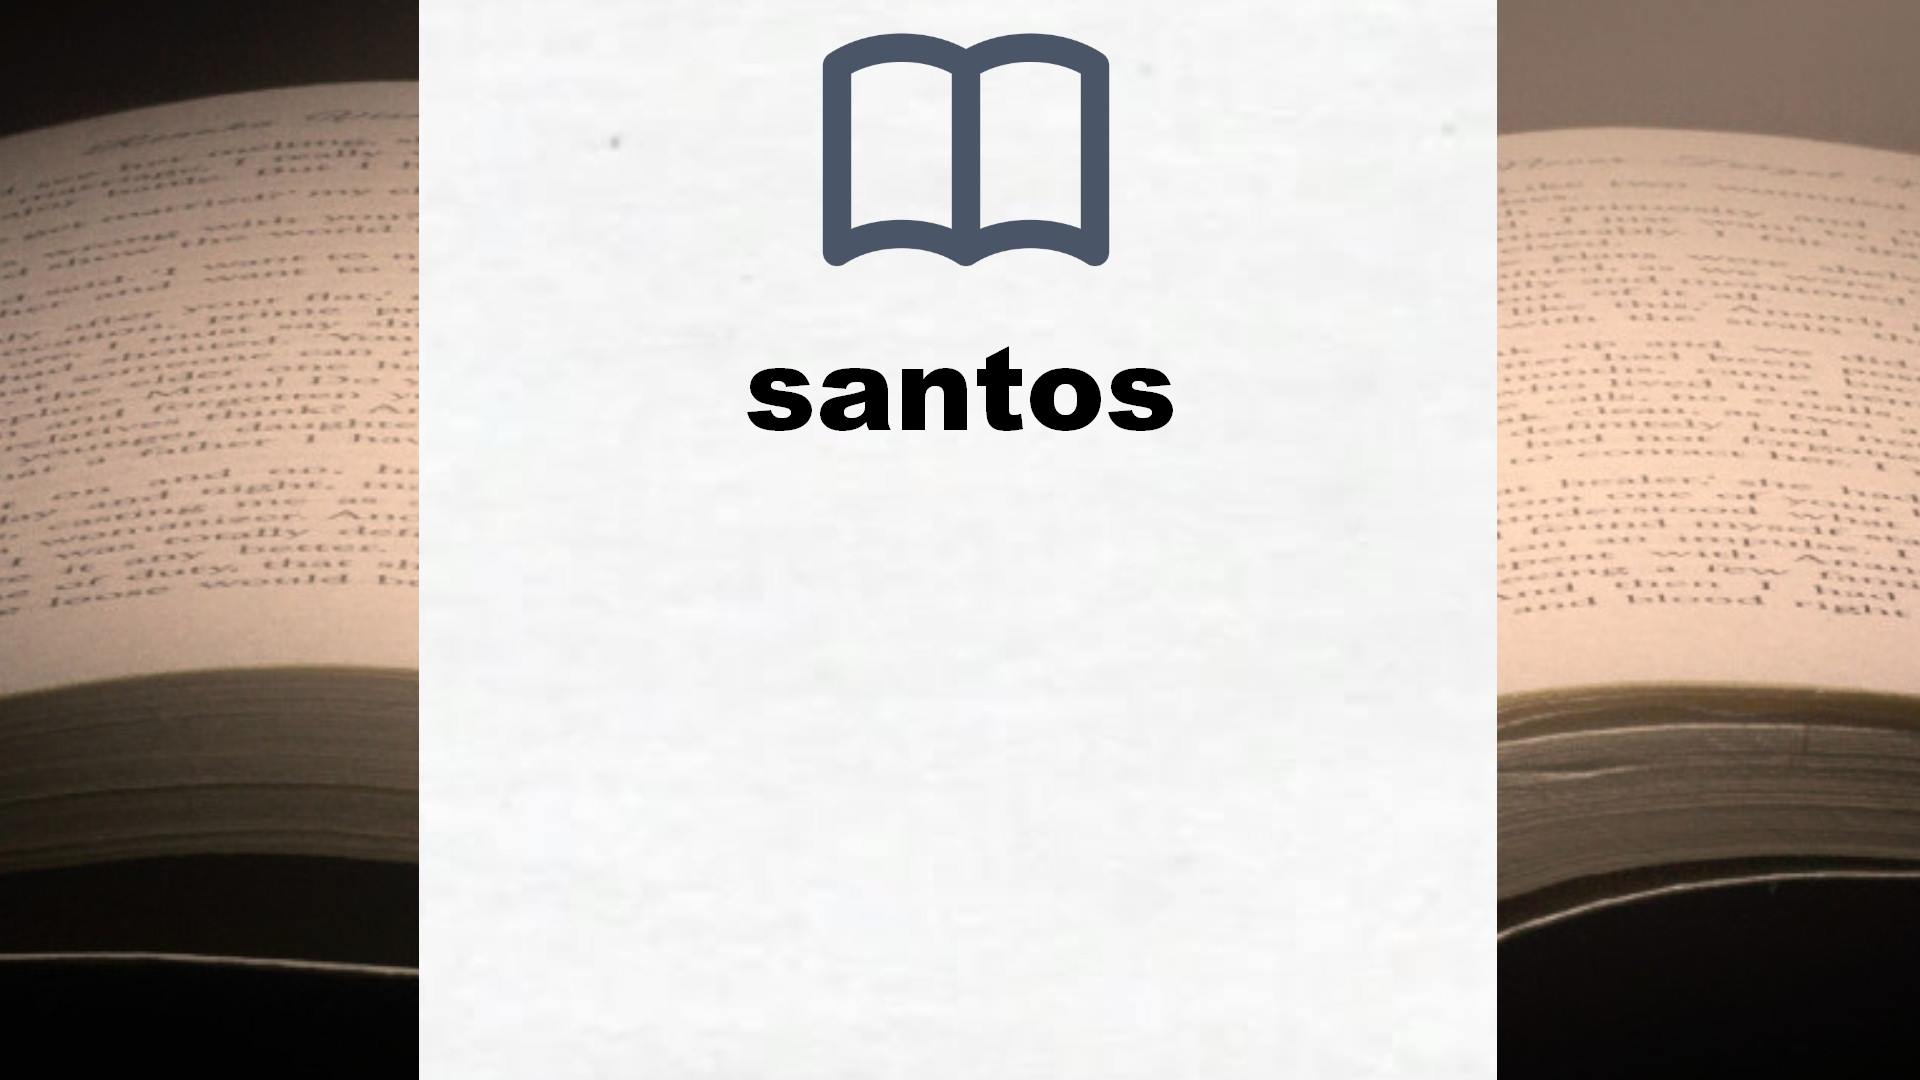 Libros sobre santos